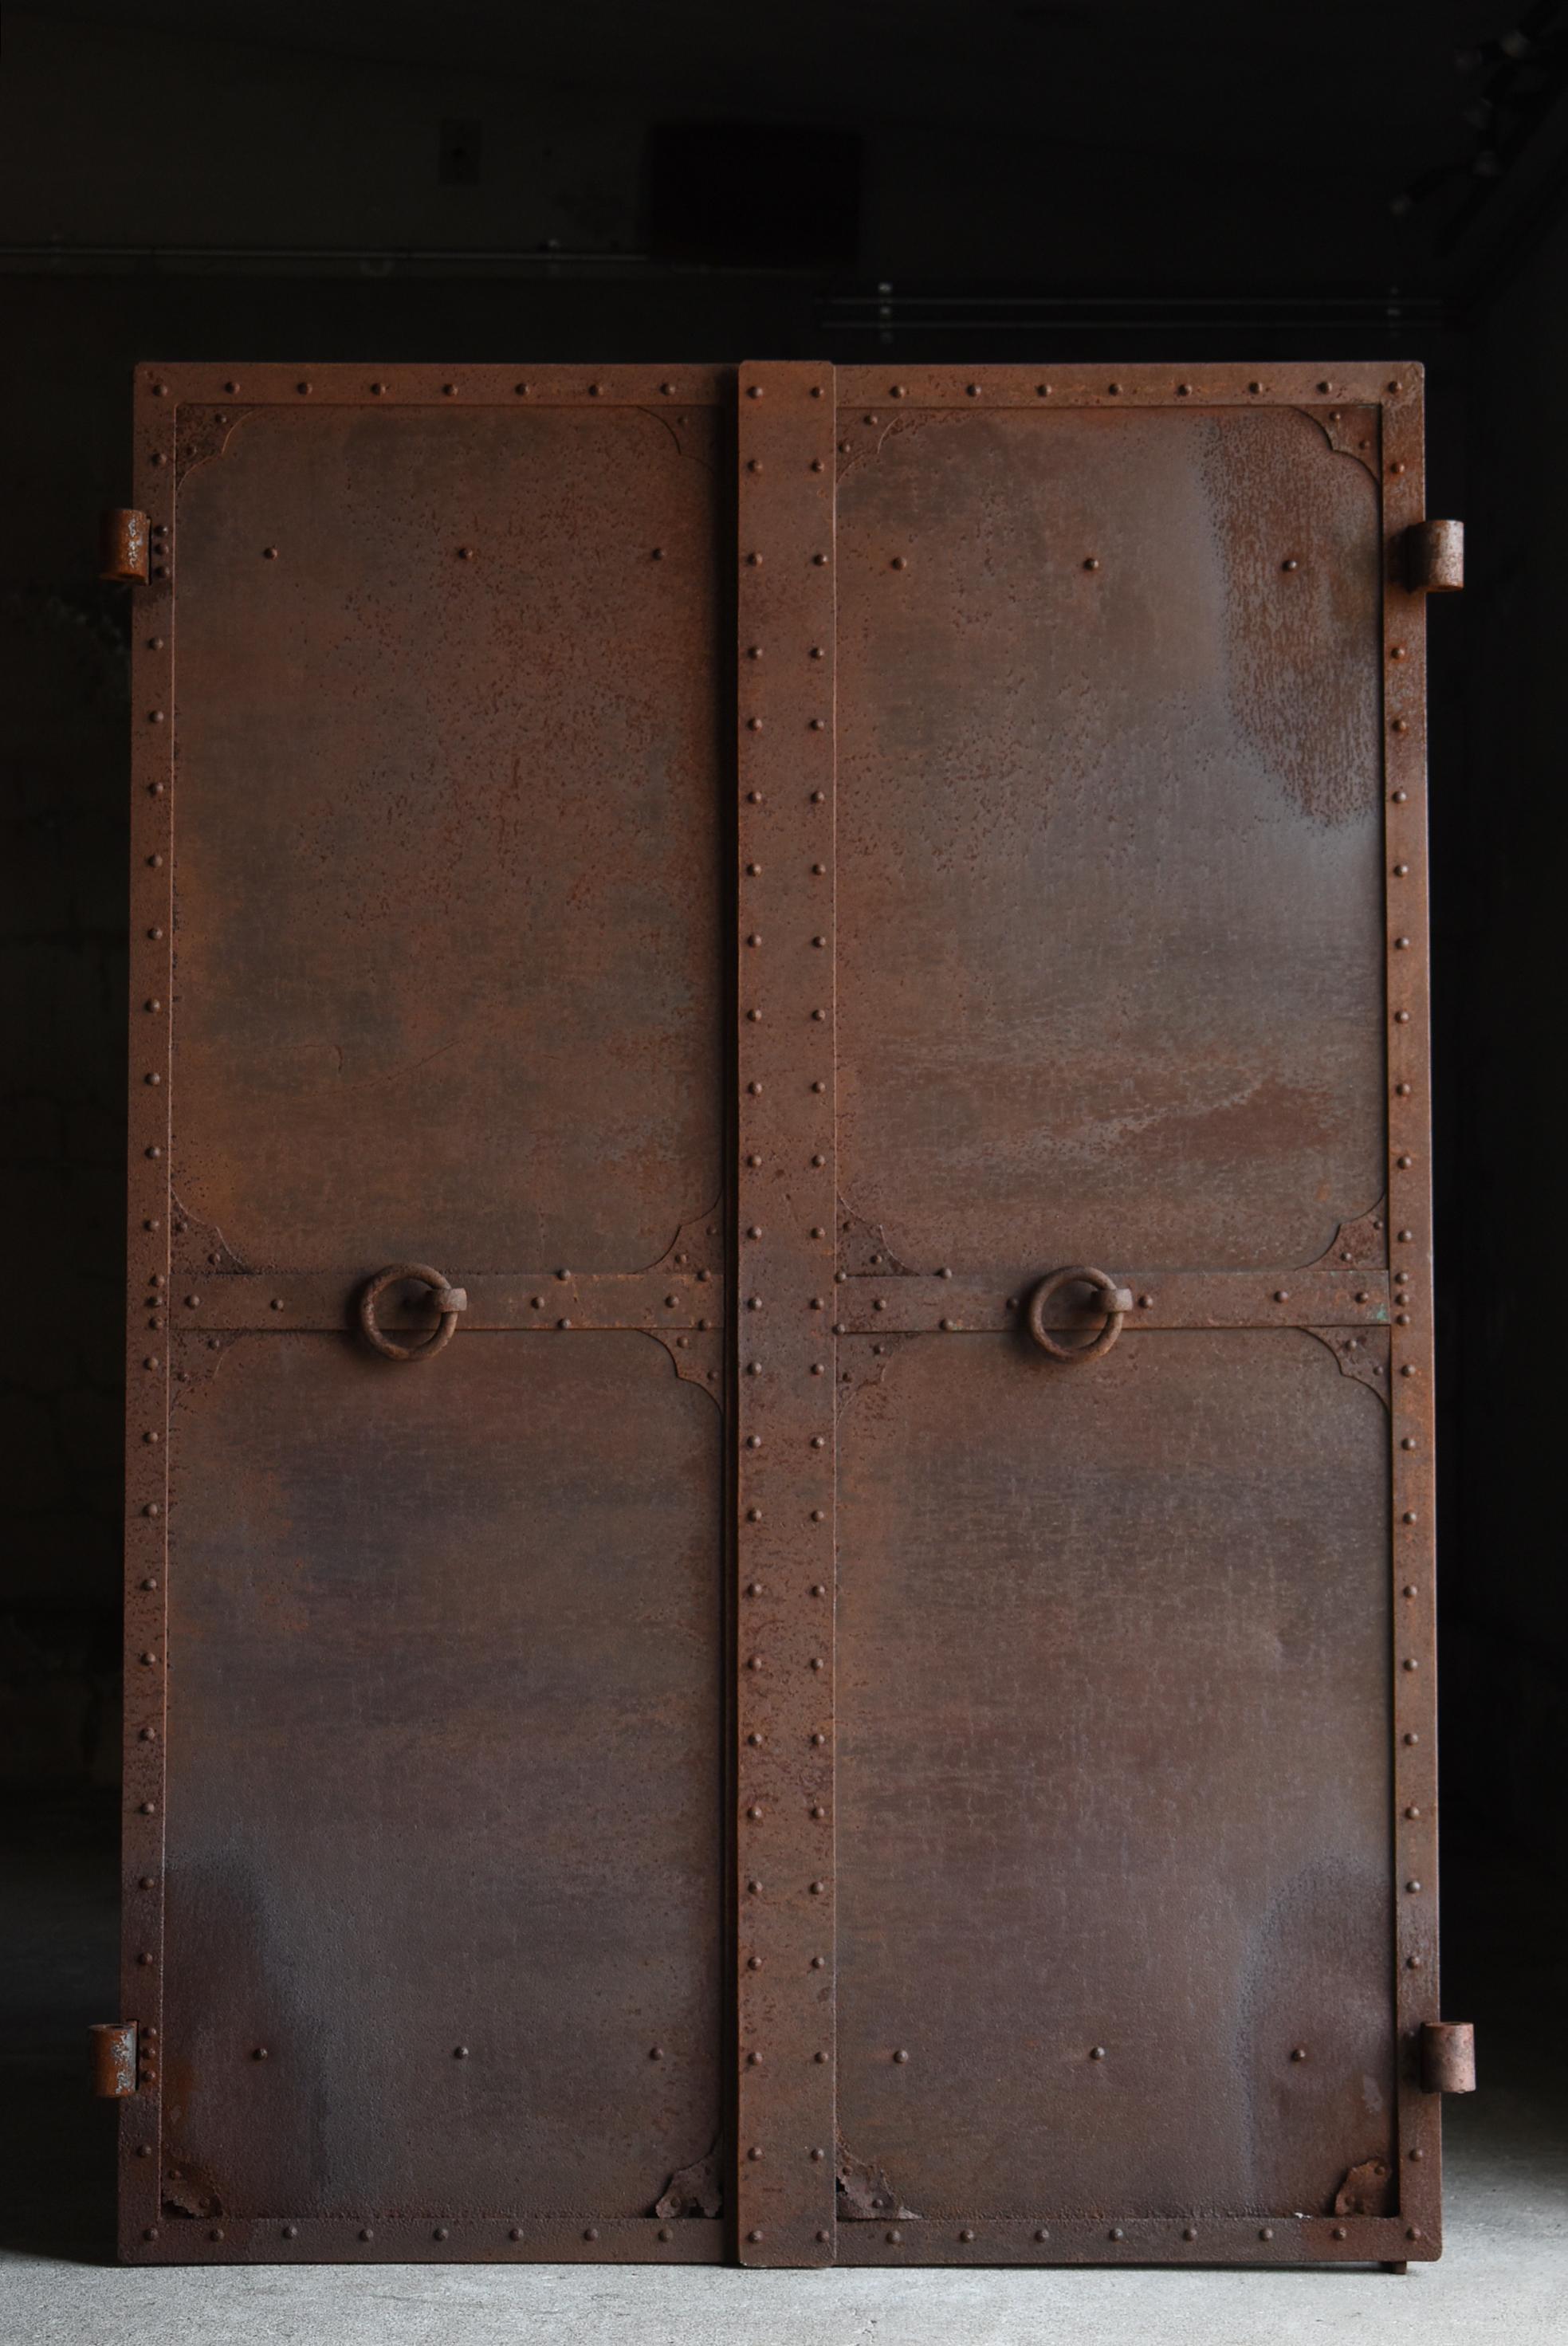 Japanese Antique Iron Double Door 1860s-1920s / Steel Gate Wabi Sabi For Sale 13